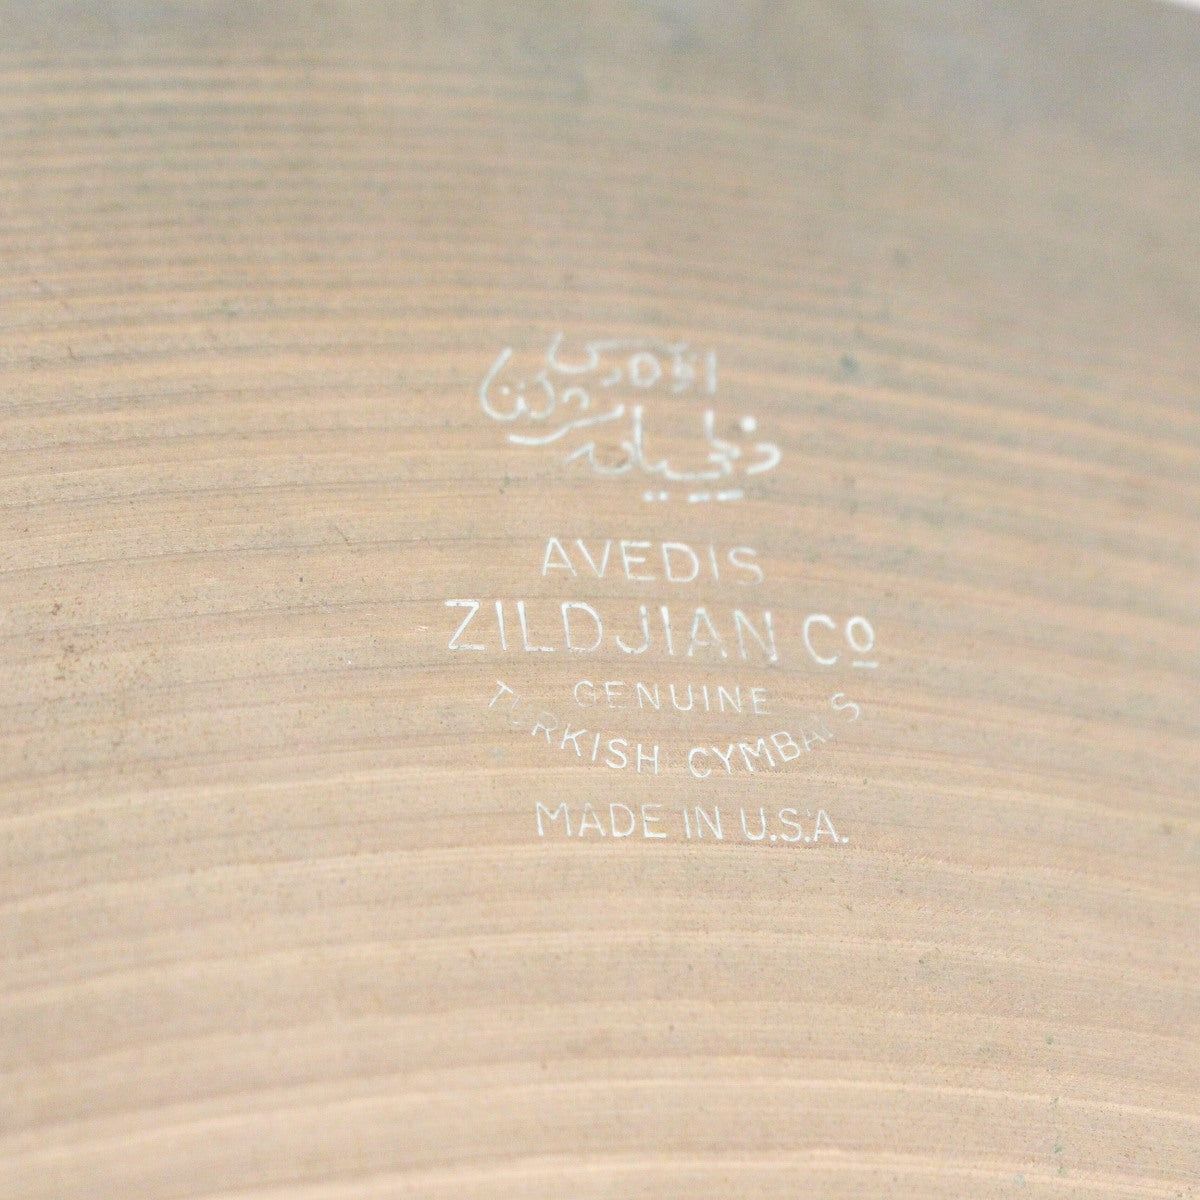 USED ZILDJIAN / Late '50s A.Zildjian 20" Ride 1874g w/sizzle '50s A Zildjian [08]